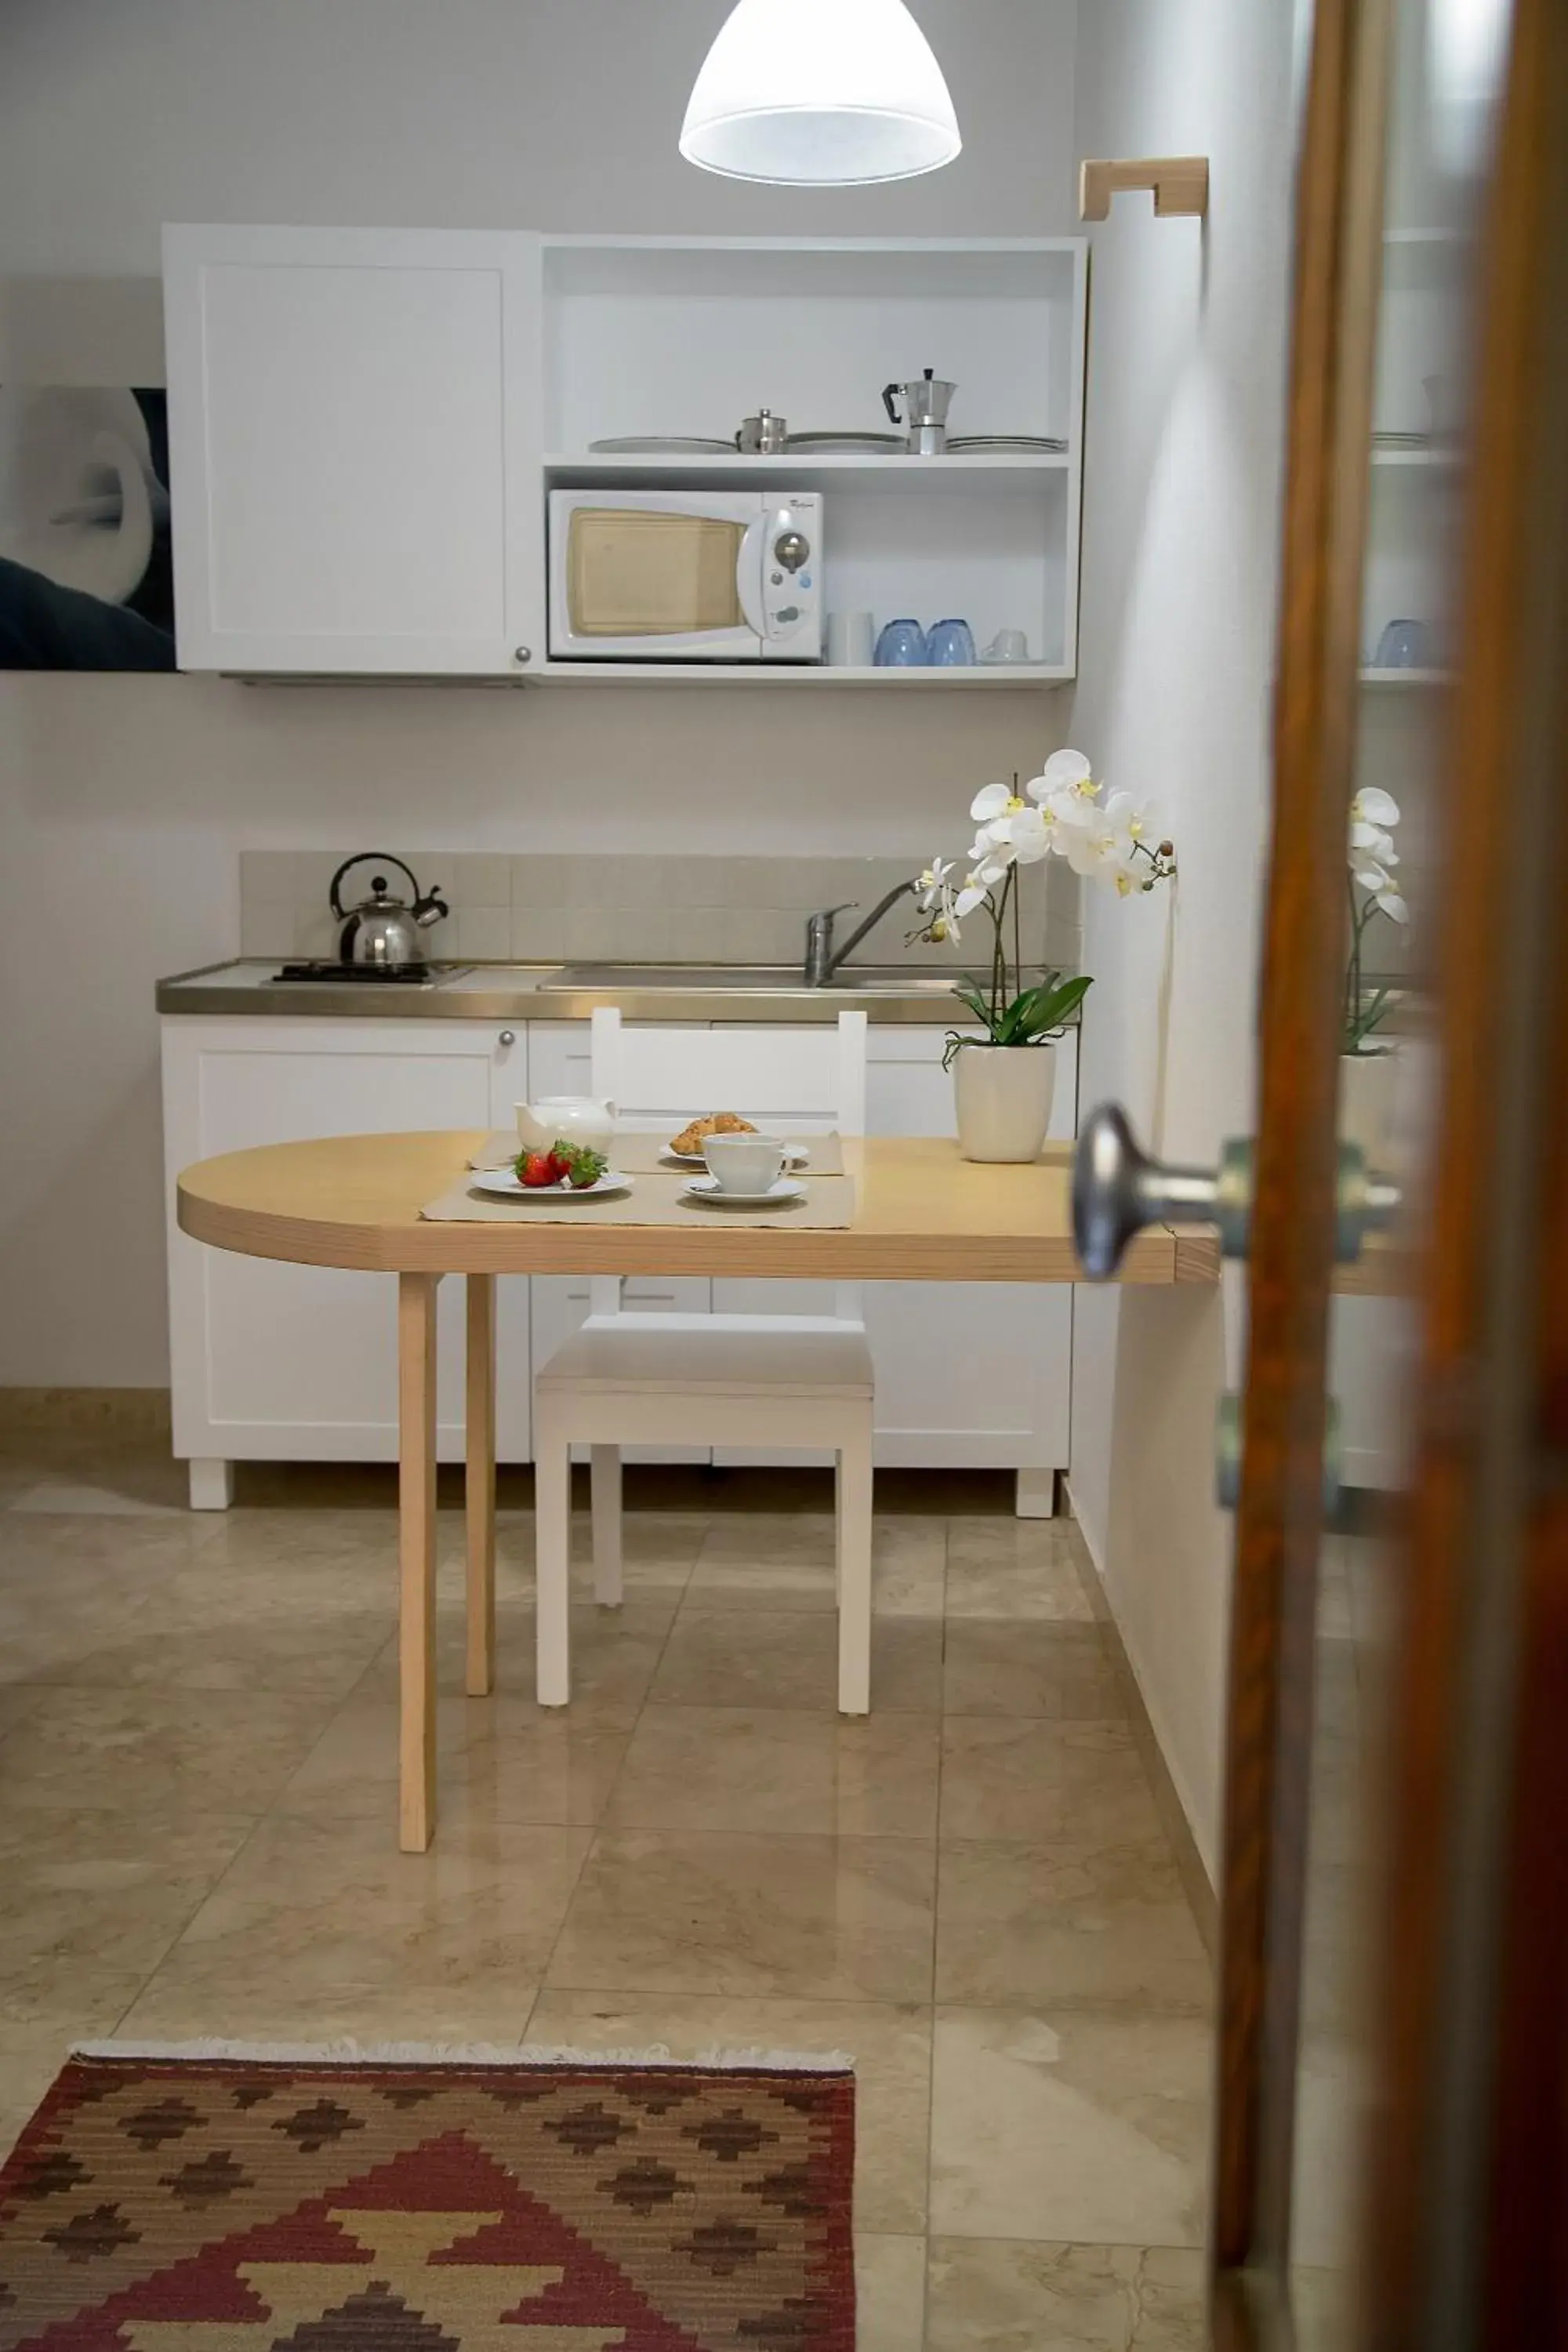 Kitchen or kitchenette, Kitchen/Kitchenette in SAN DOMENICO residence by BADIA NUOVA